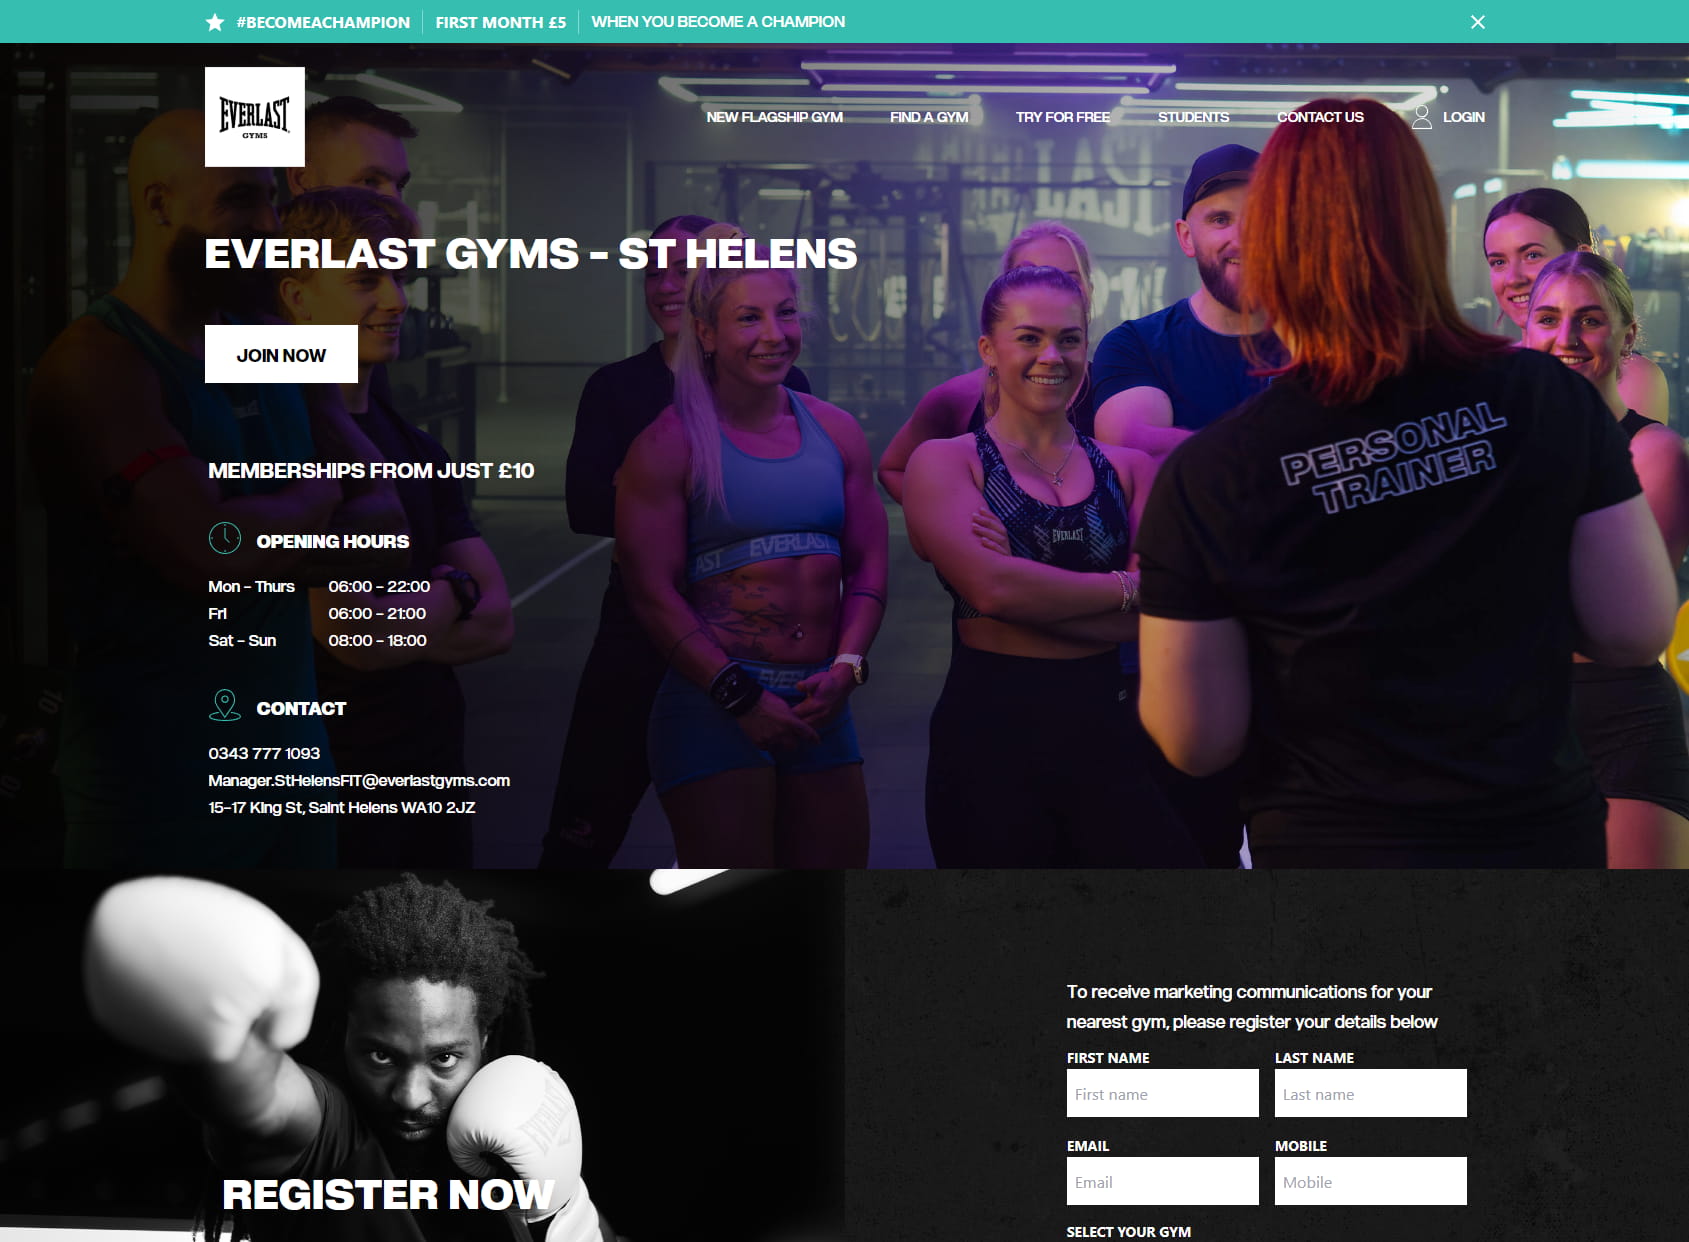 Everlast Gyms - St Helens